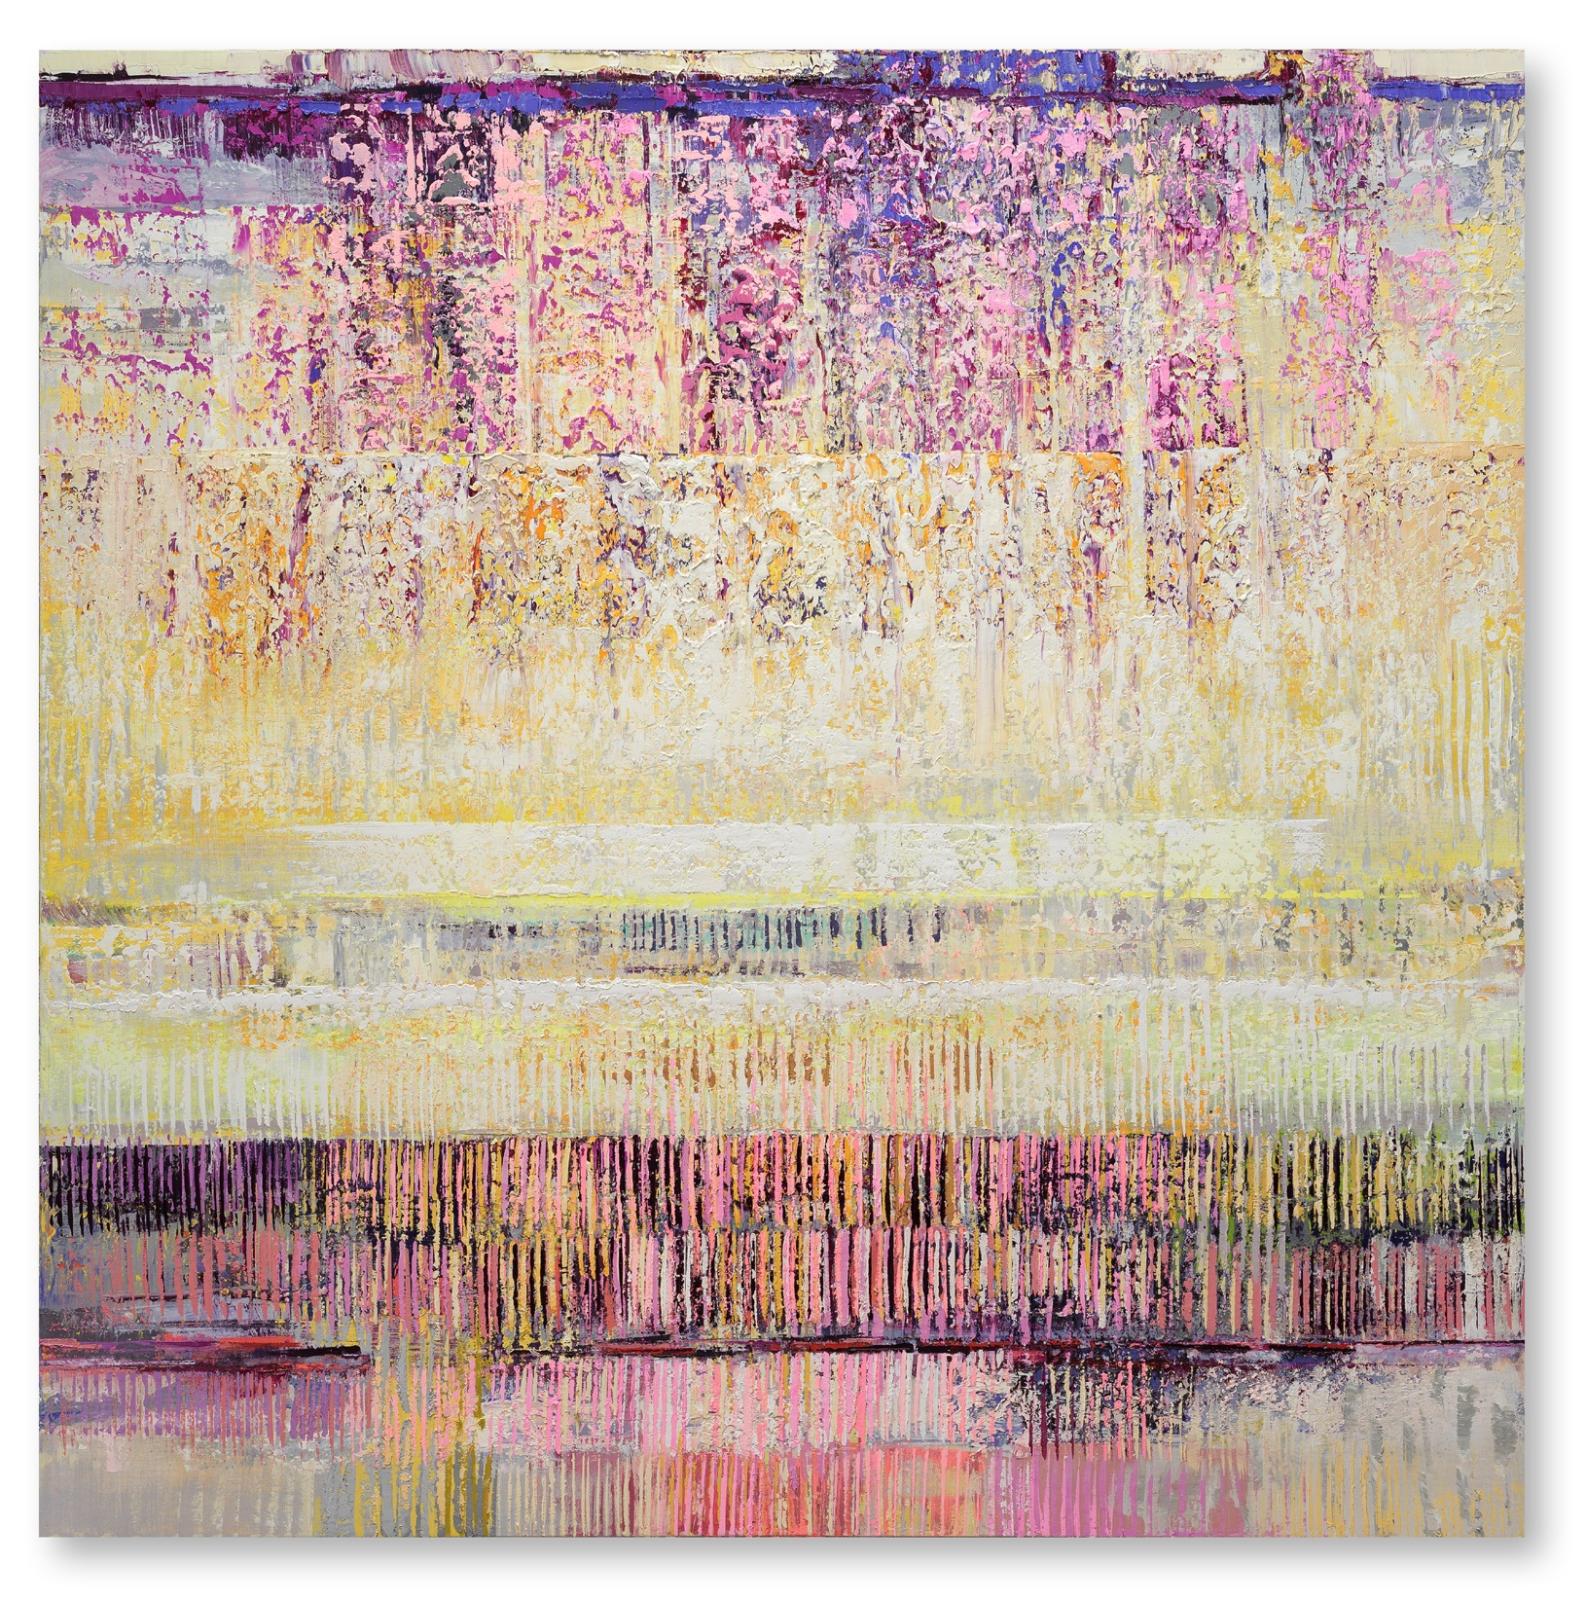 Bruno Kurz, Amber Shore 2 , 2019, 180 cm x 180 cm, Acryl, Öl auf Leinwand, Preis auf Anfrage, kub104kü